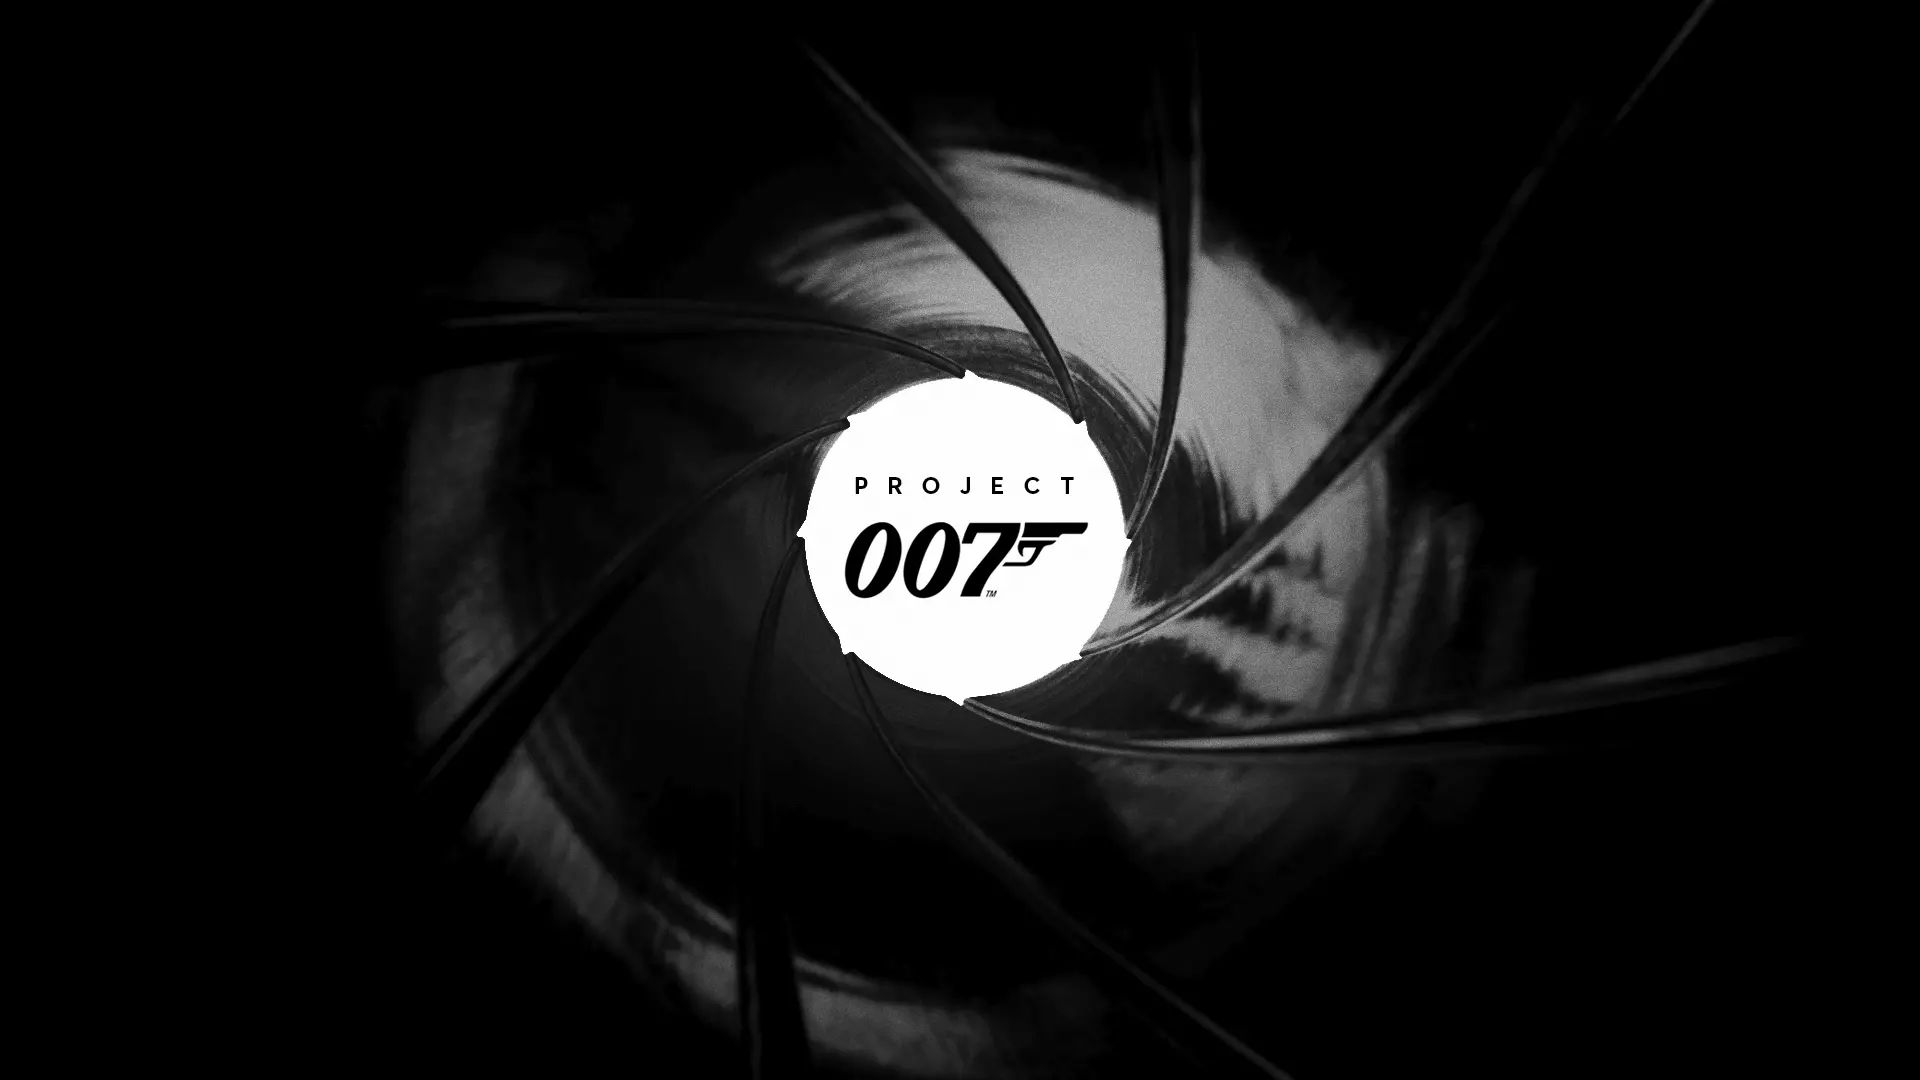 Project 007 (рабочее название) - видеоигра о Джеймсе Бонде, разработанная и изданная IO Interactive.